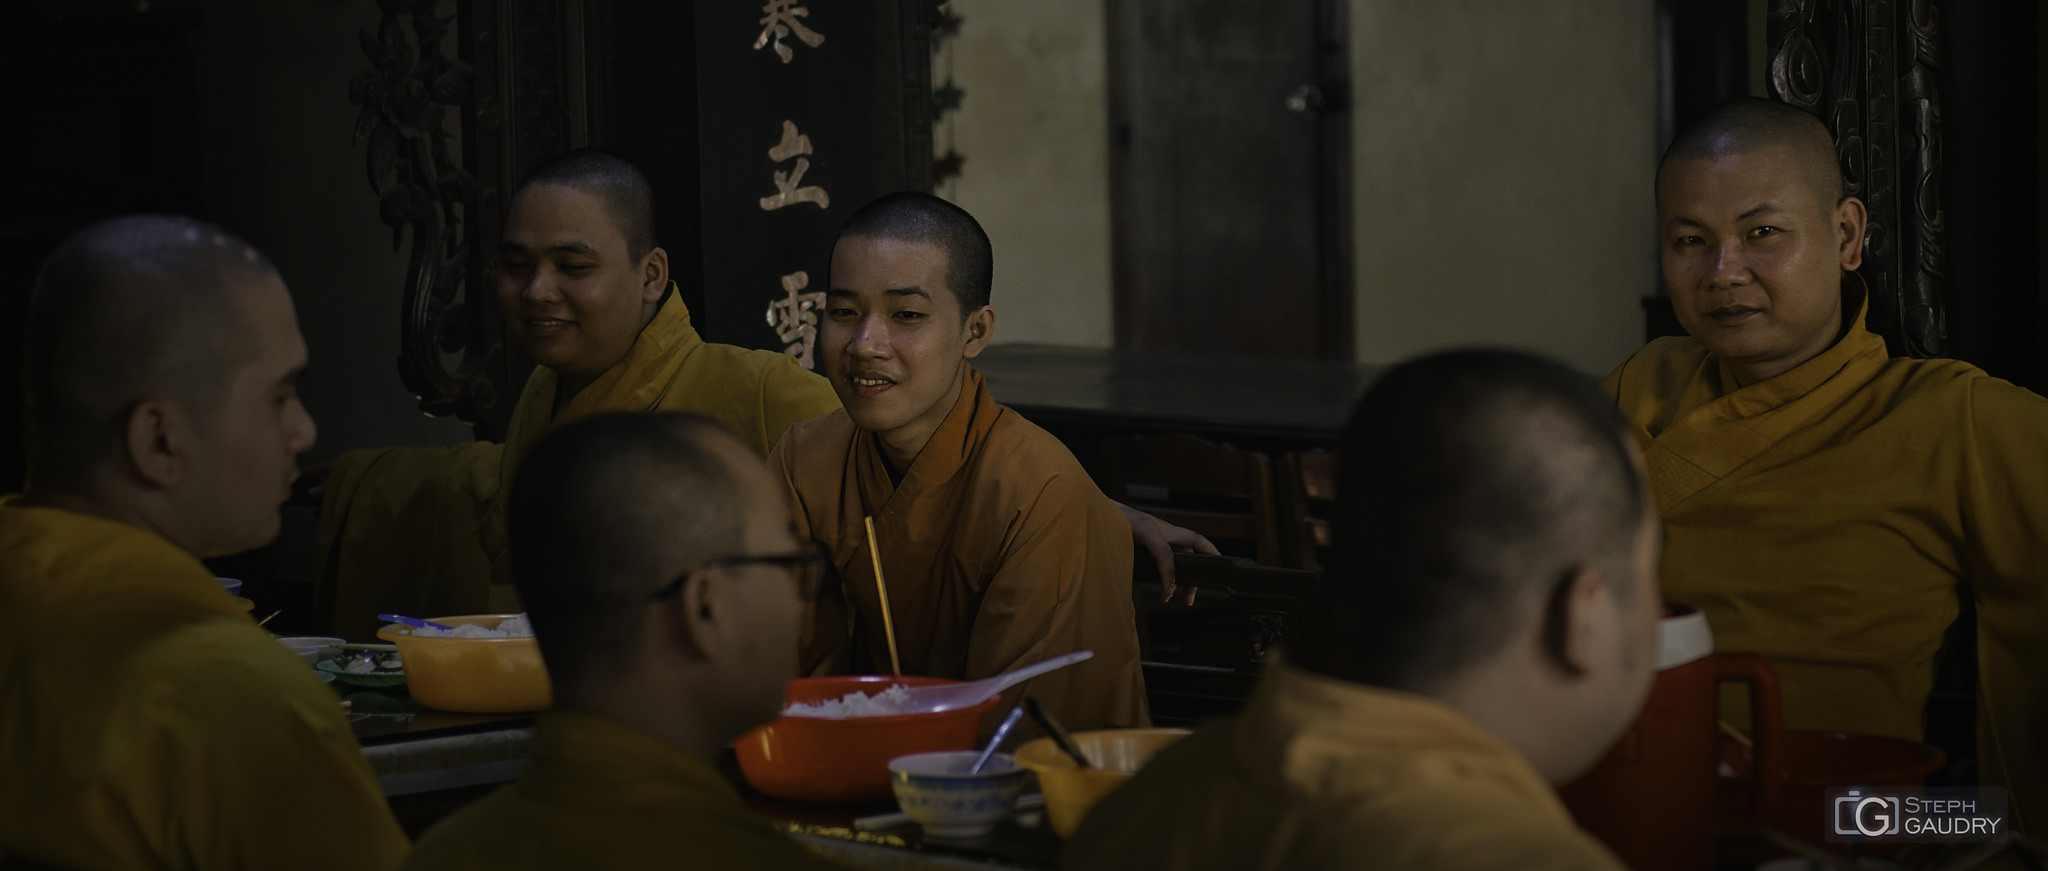 Le repas des moines bouddhistes [Klik om de diavoorstelling te starten]